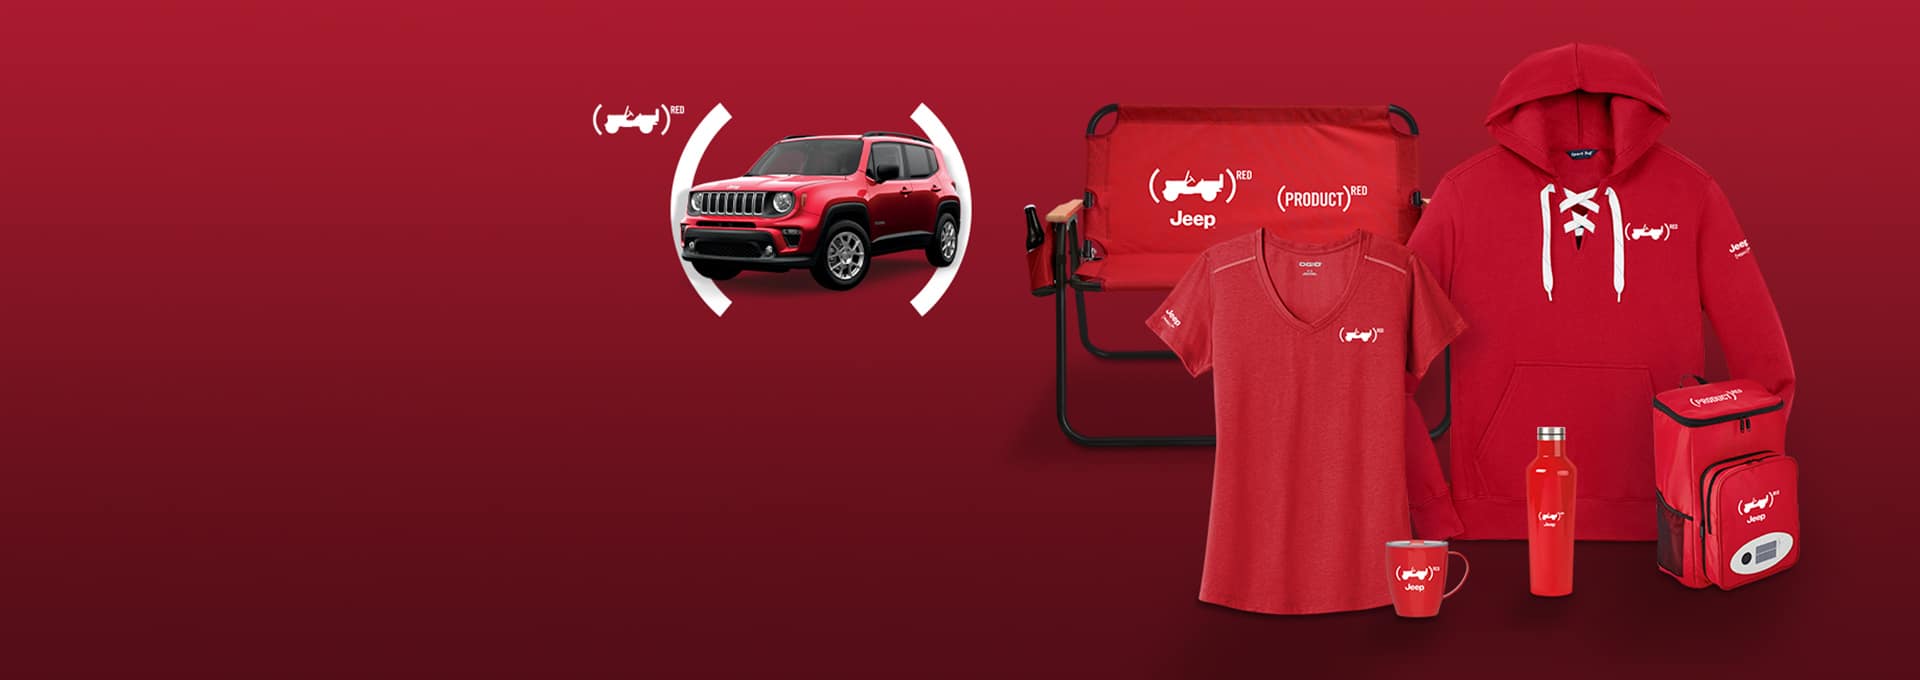 Logo de Jeep Red. Conjunto de mercancías con la marca Jeep, que incluyen una silla de puerta trasera, una camiseta, una sudadera con capucha, una taza, una cantimplora y un refrigerador portátil.